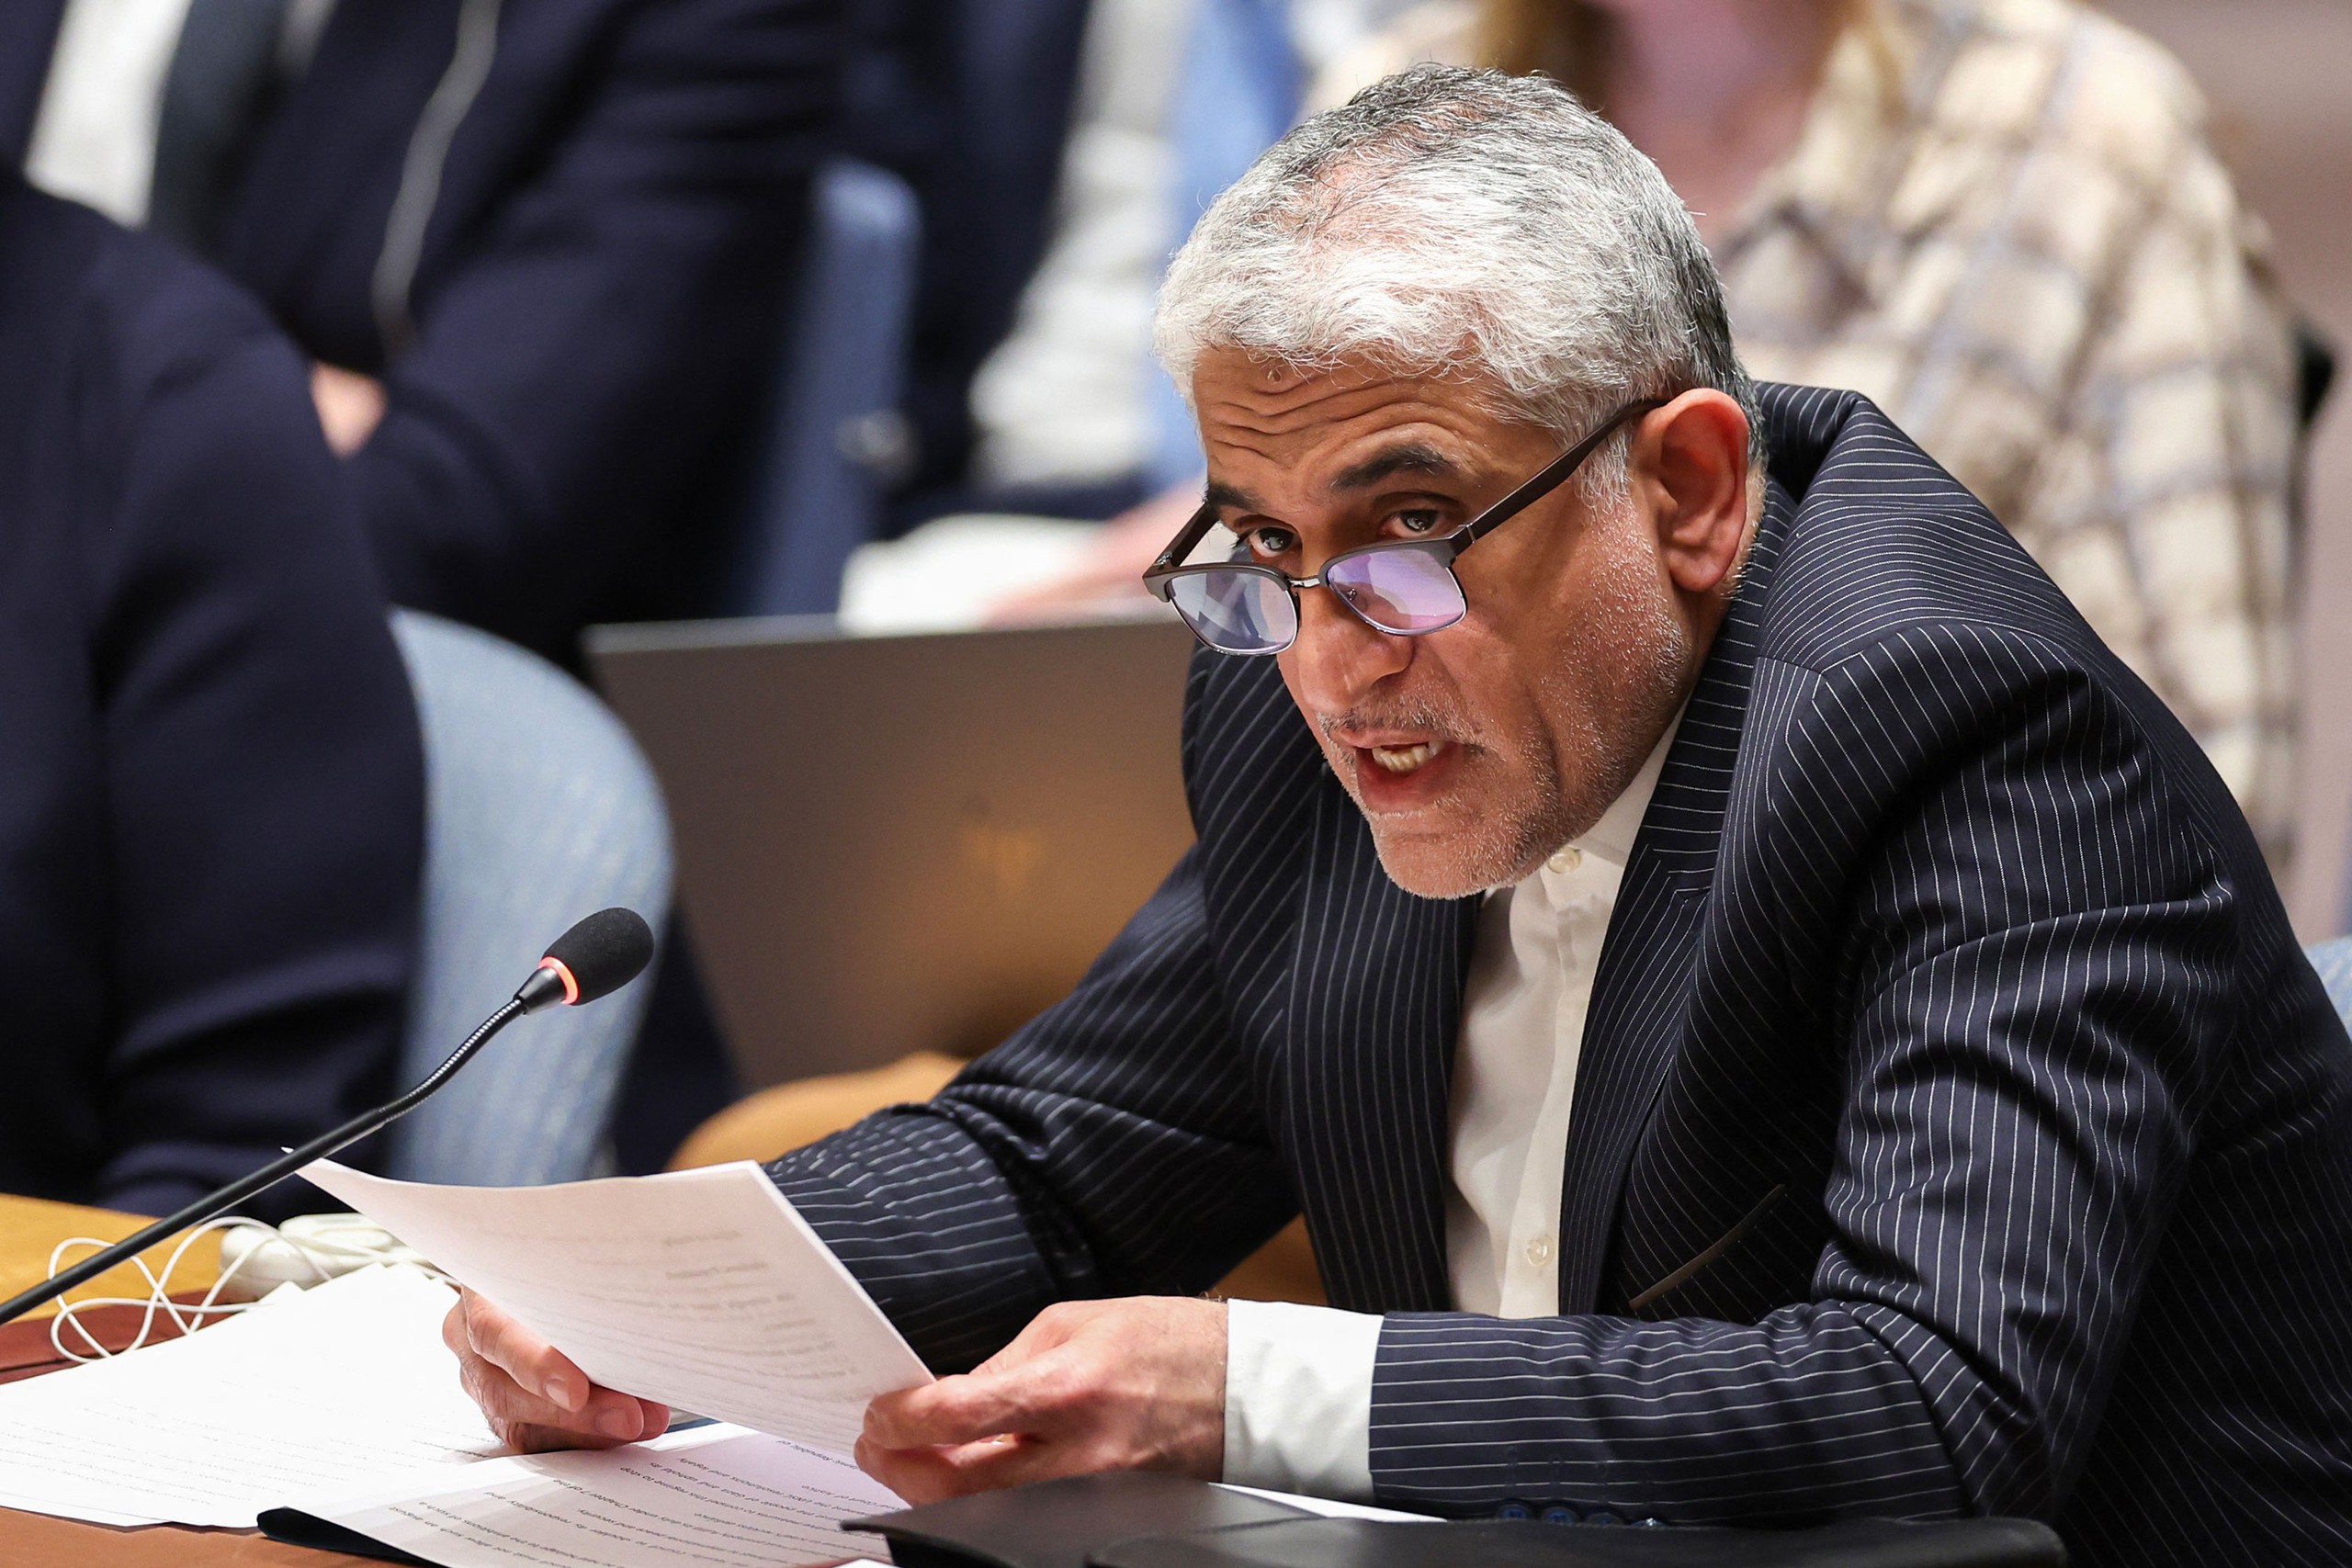 Màn đấu khẩu của Đại sứ Iran và Israel gây náo loạn phiên họp Hội đồng Bảo an LHQ- Ảnh 2.